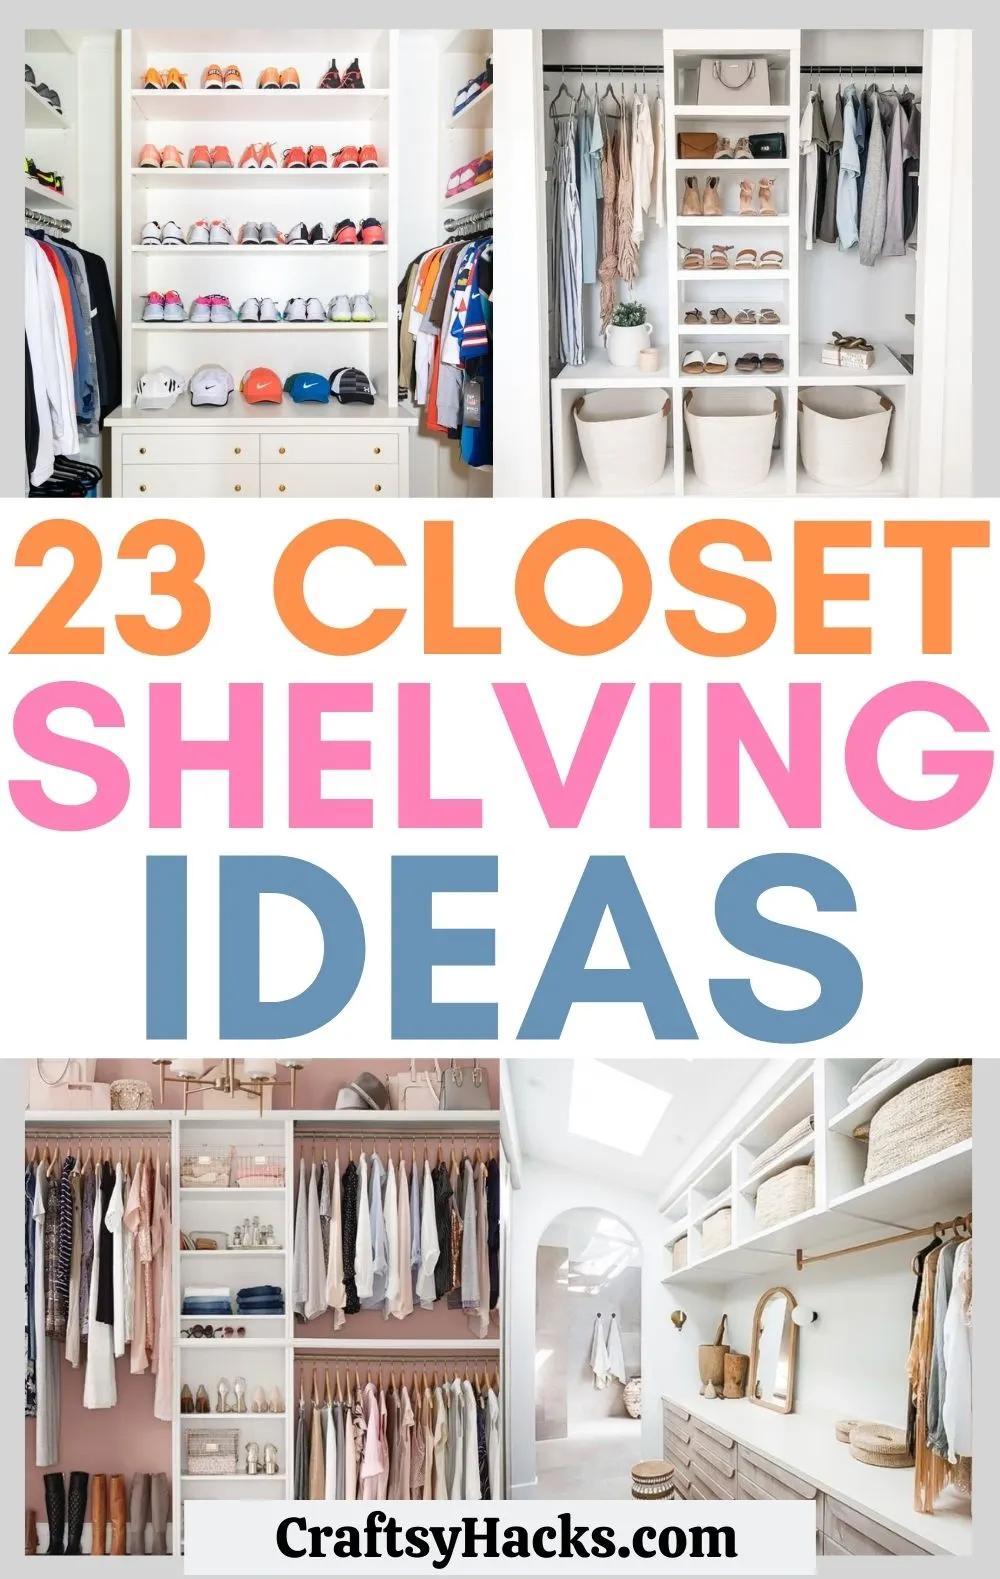 23 Closet Shelving Ideas To Up Your, Closet Shelving Units